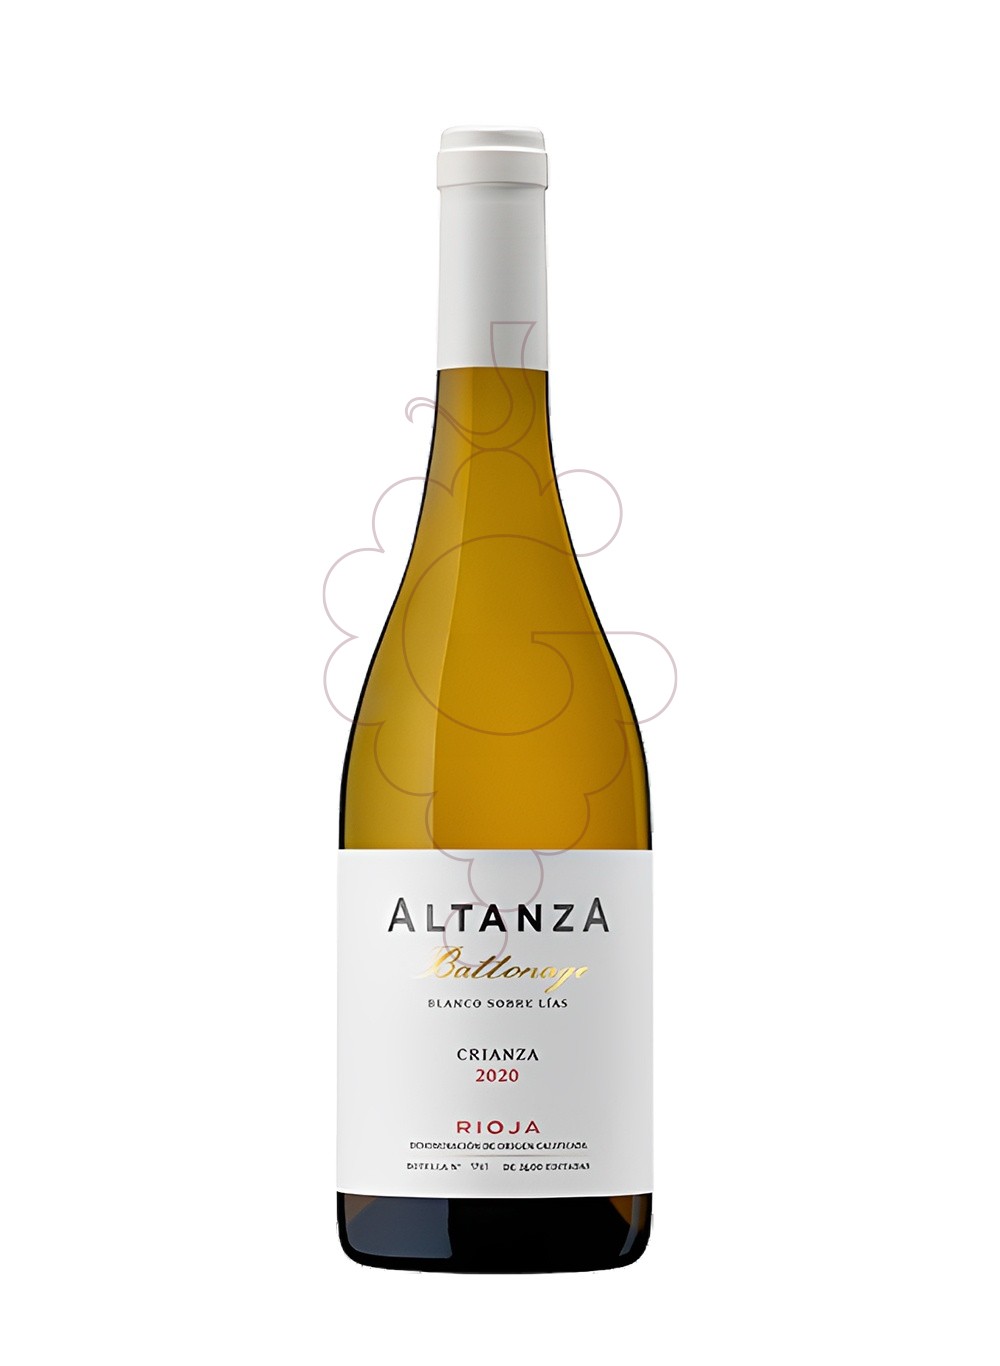 Photo Altanza battonage blanco 2020 white wine